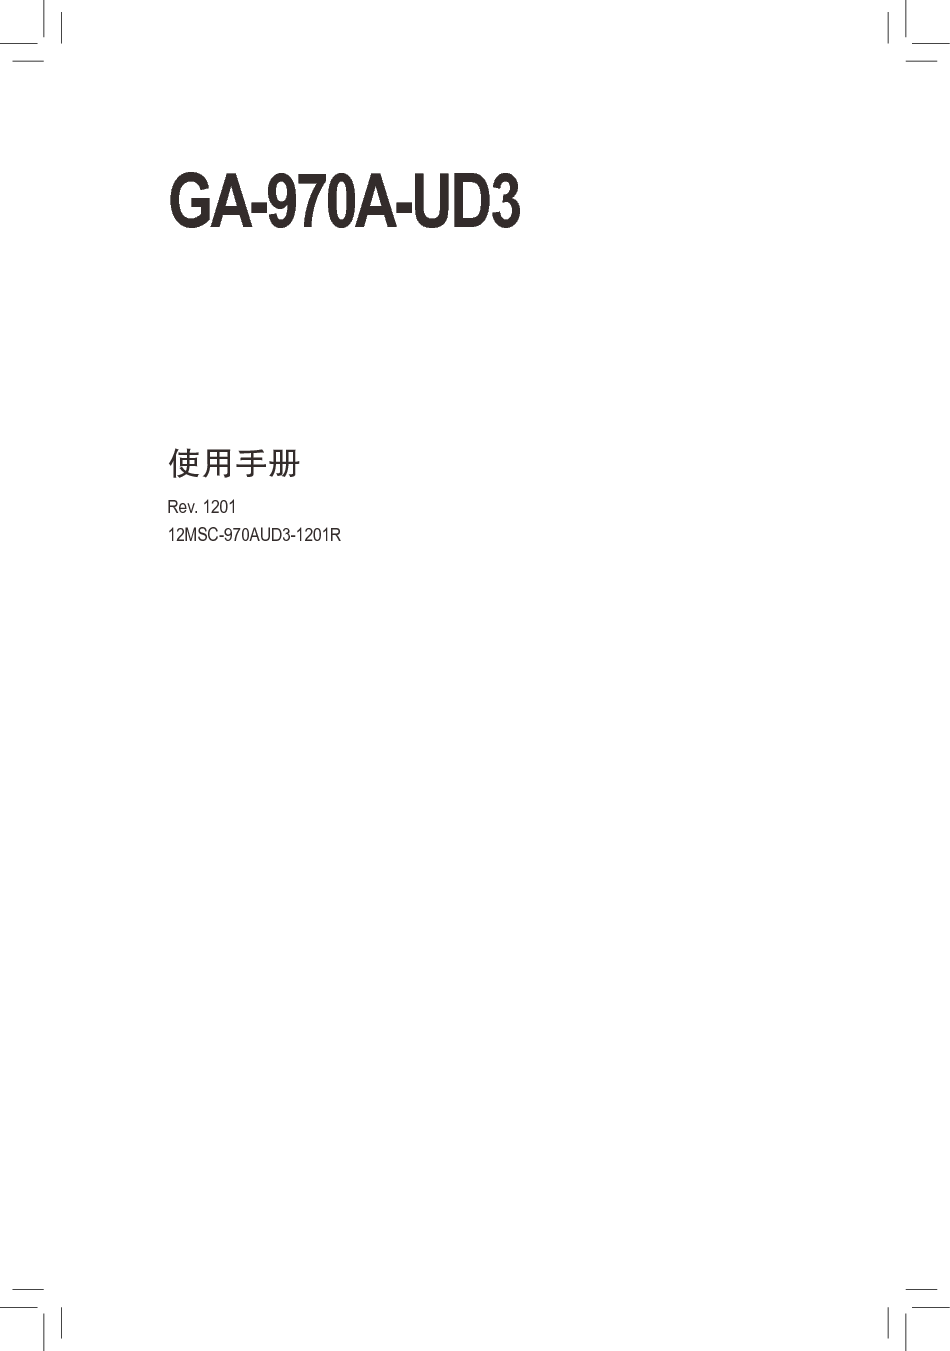 技嘉 Gigabyte GA-970A-UD3 1201版 使用手册 封面